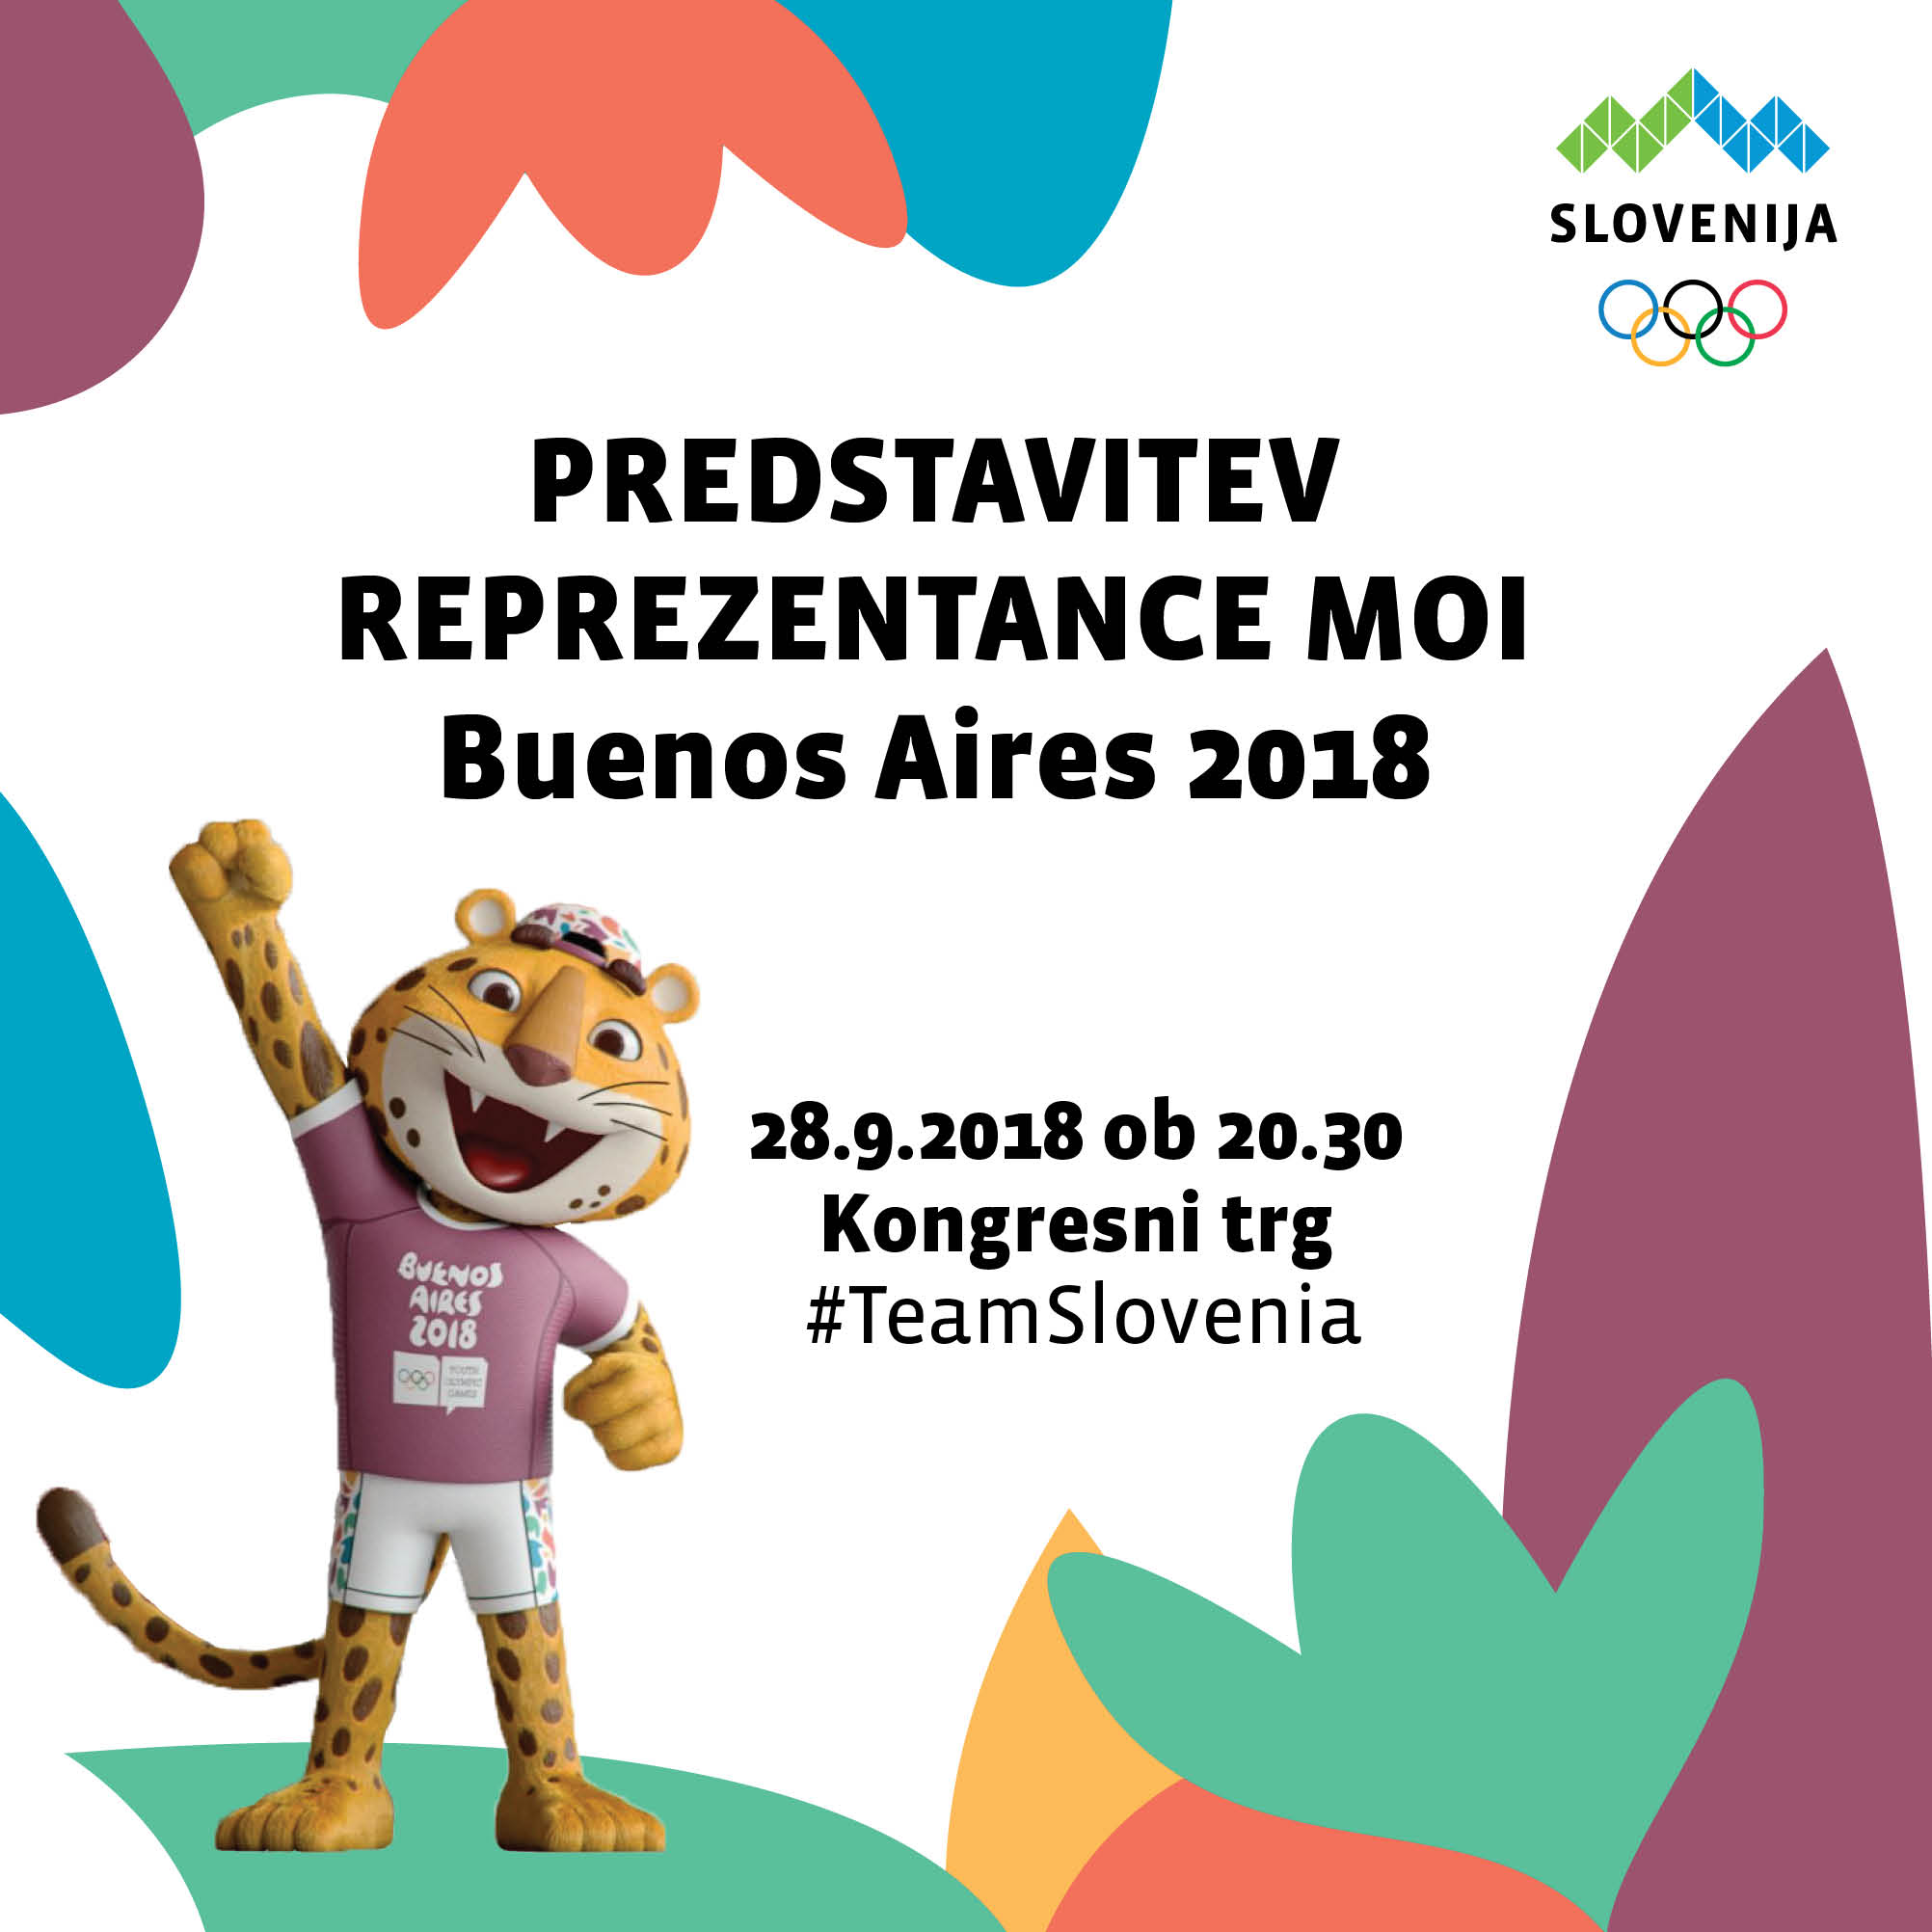 Predstavitev mladinske olimpijske repezentance Slovenije